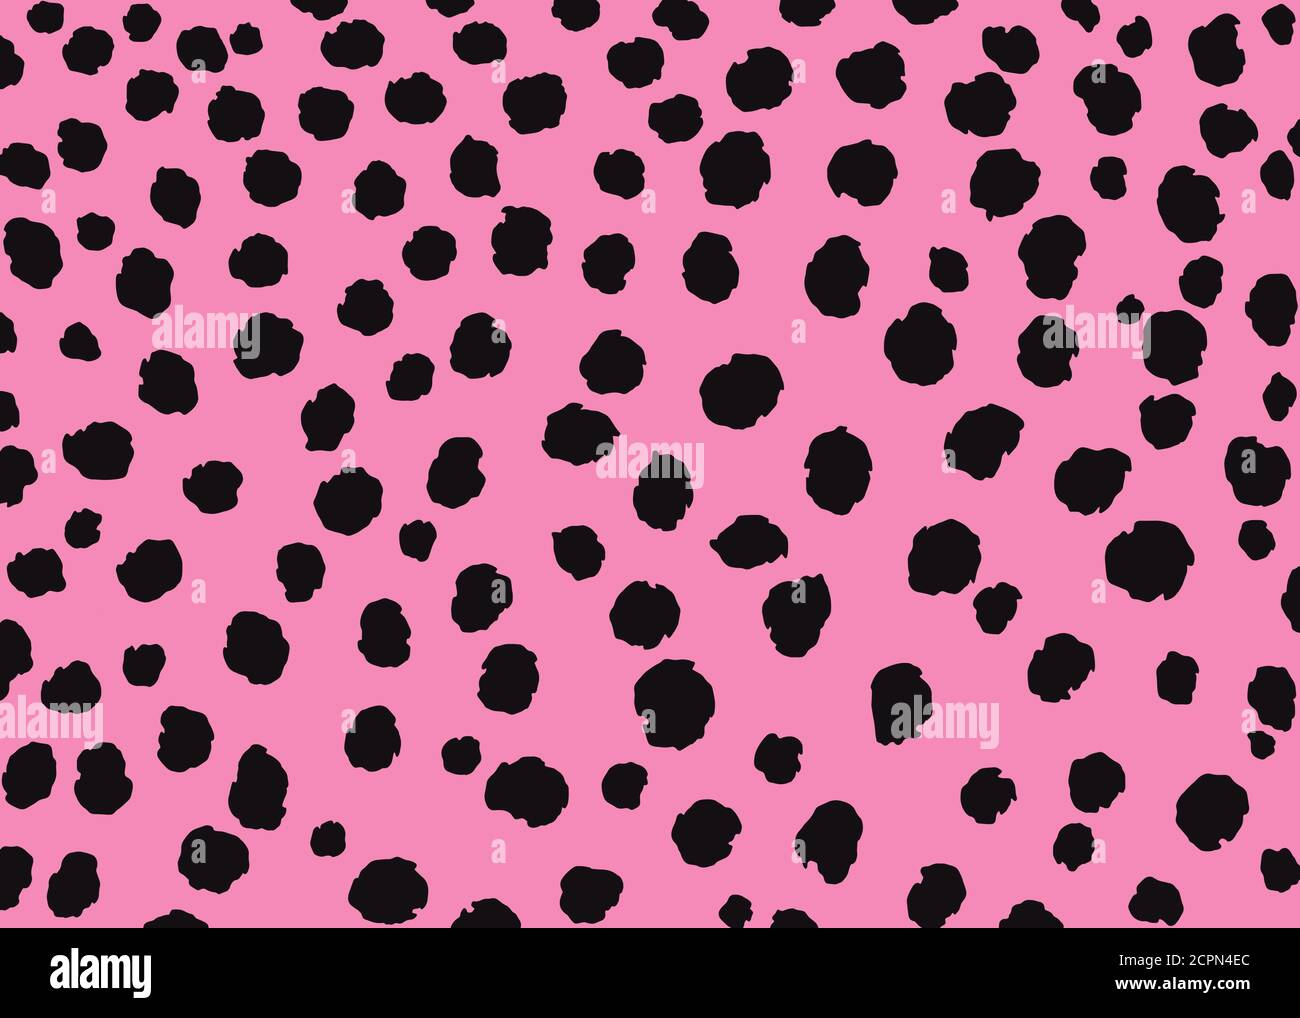 Leopard spots pattern design, pink and black vector illustration background. wildlife fur skin design illustration Stock Vector